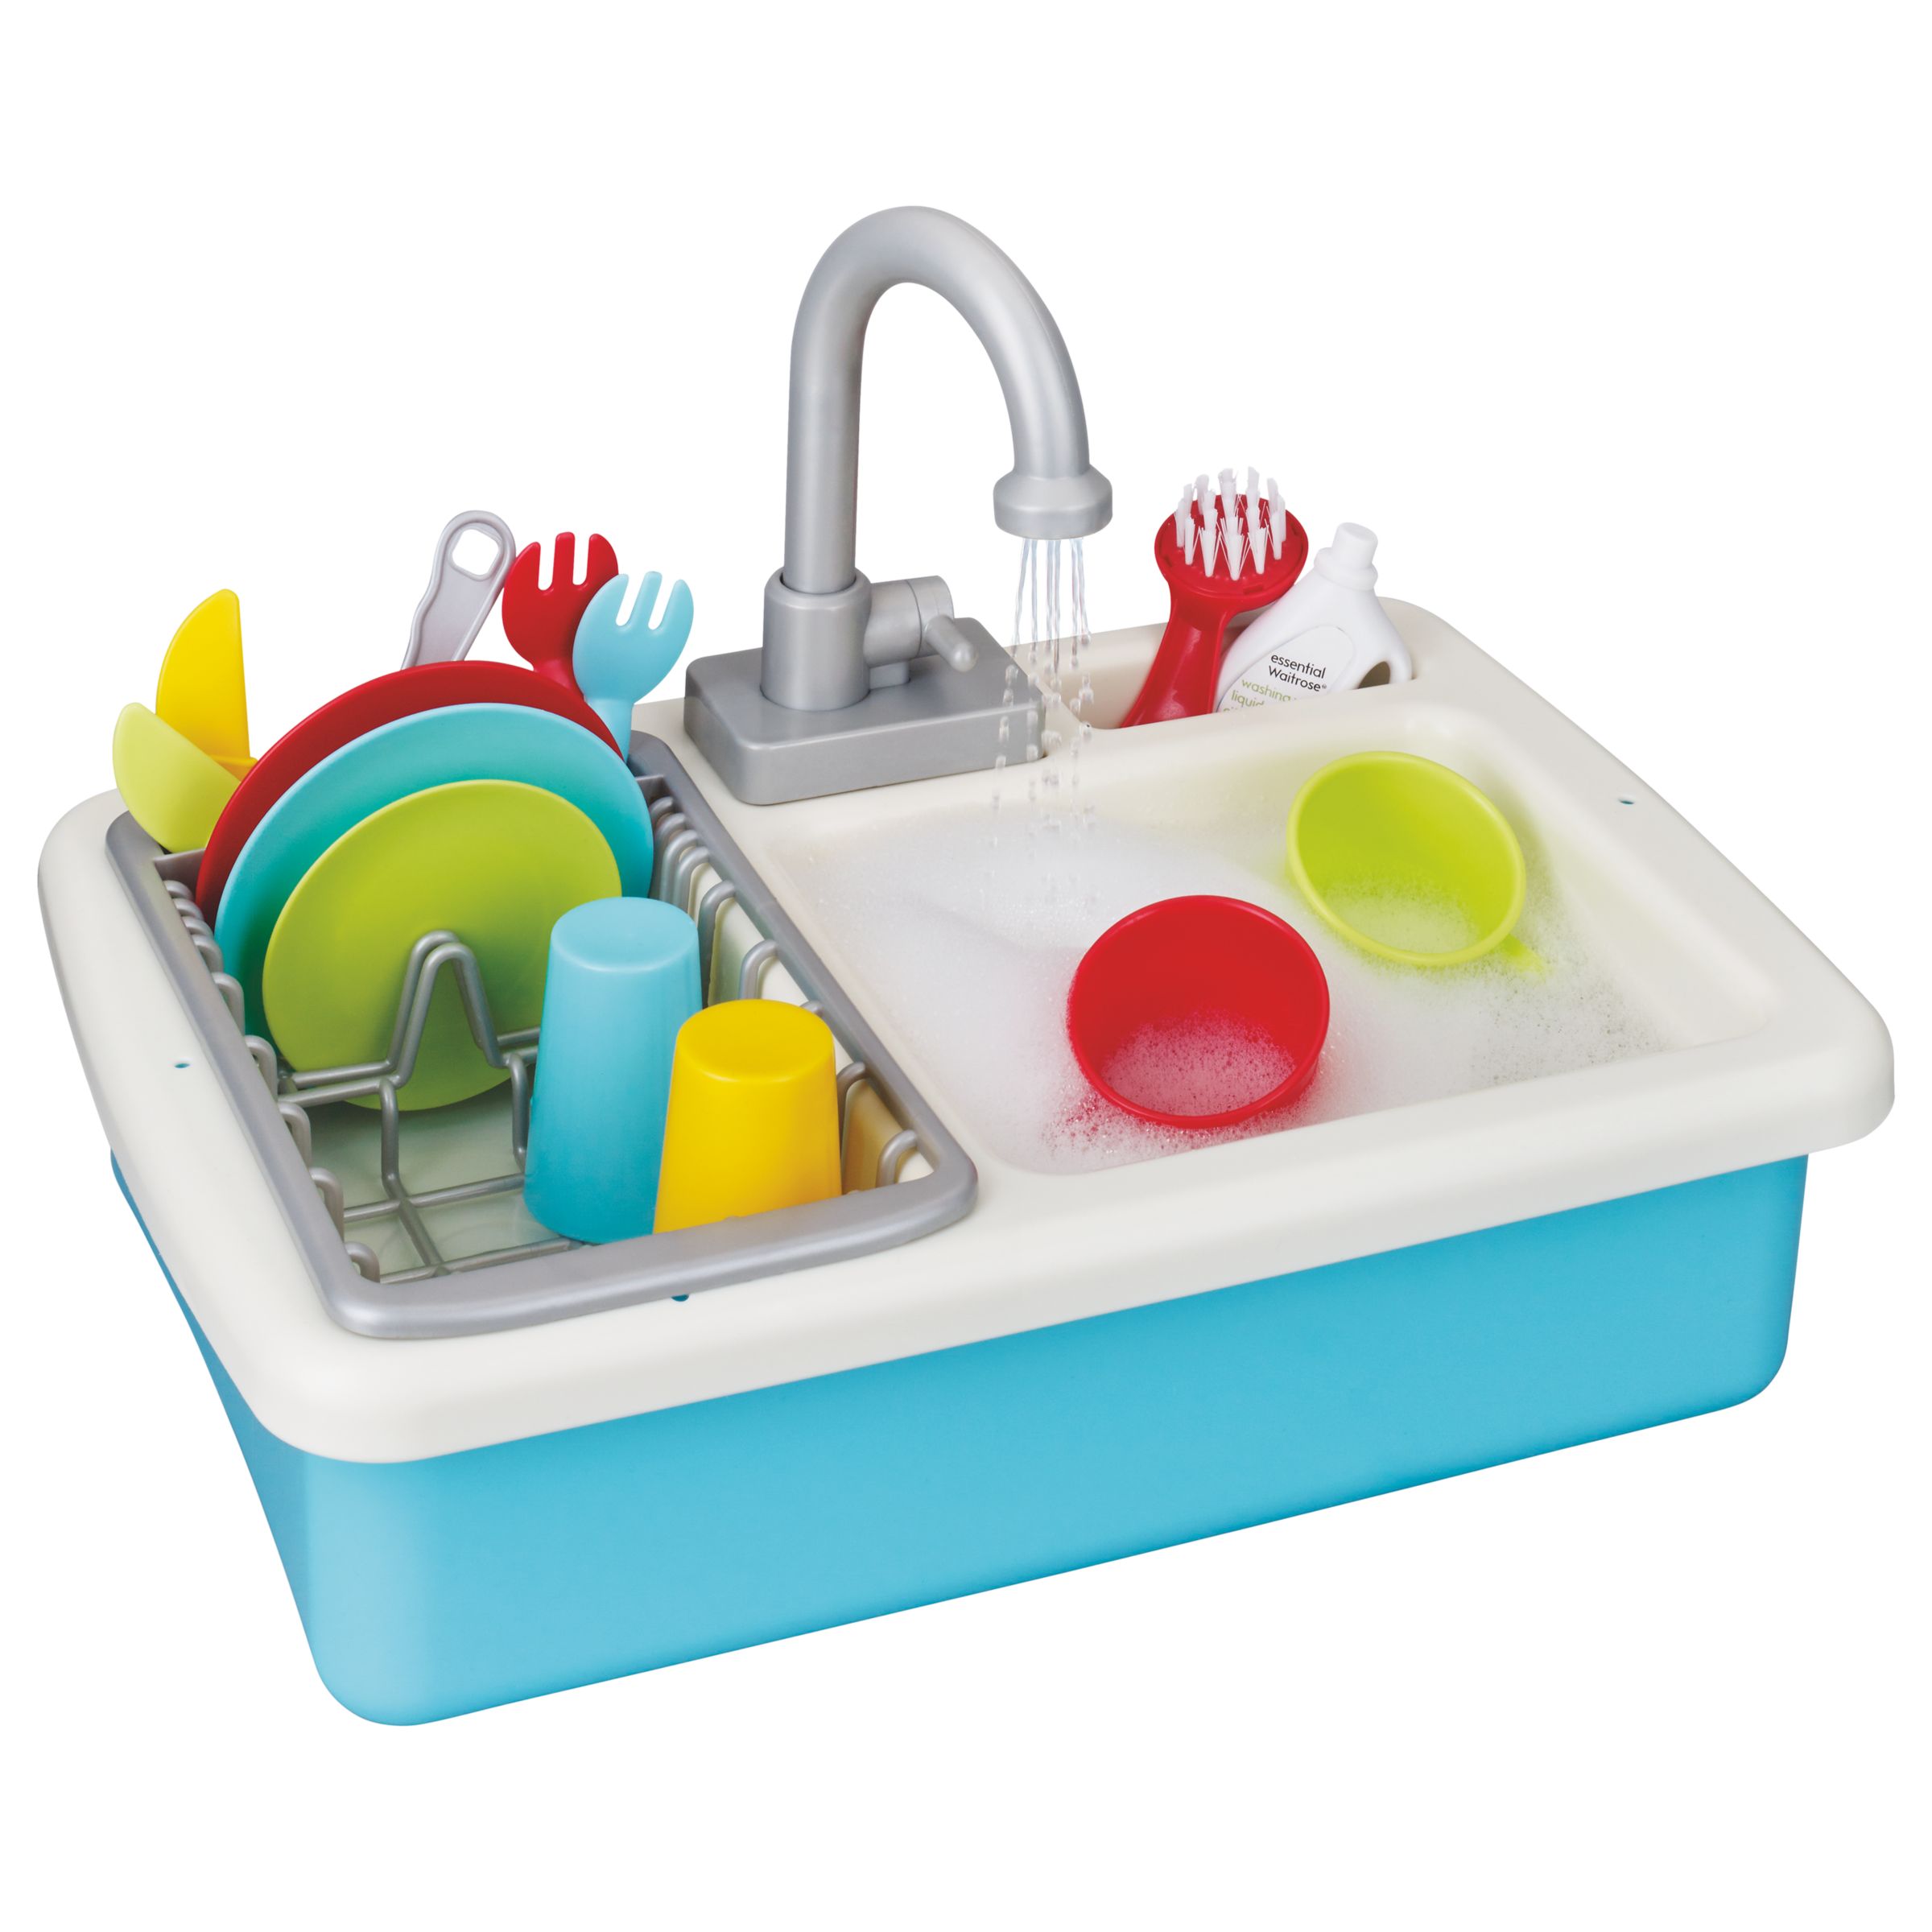 John Lewis Partners Wash Up Kitchen Sink Playset